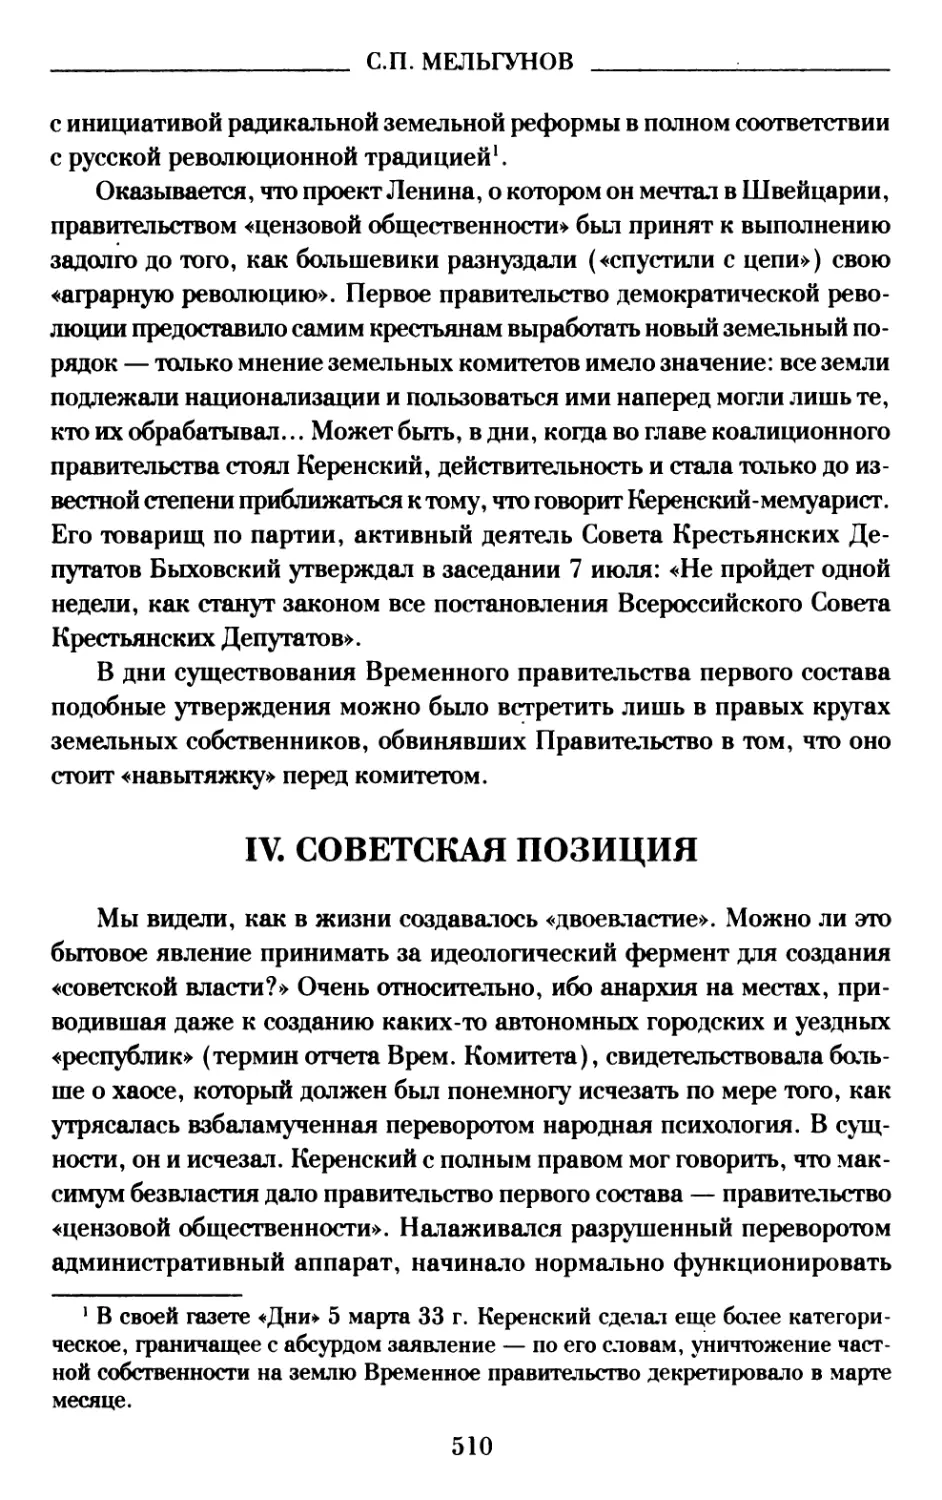 IV. Советская позиция